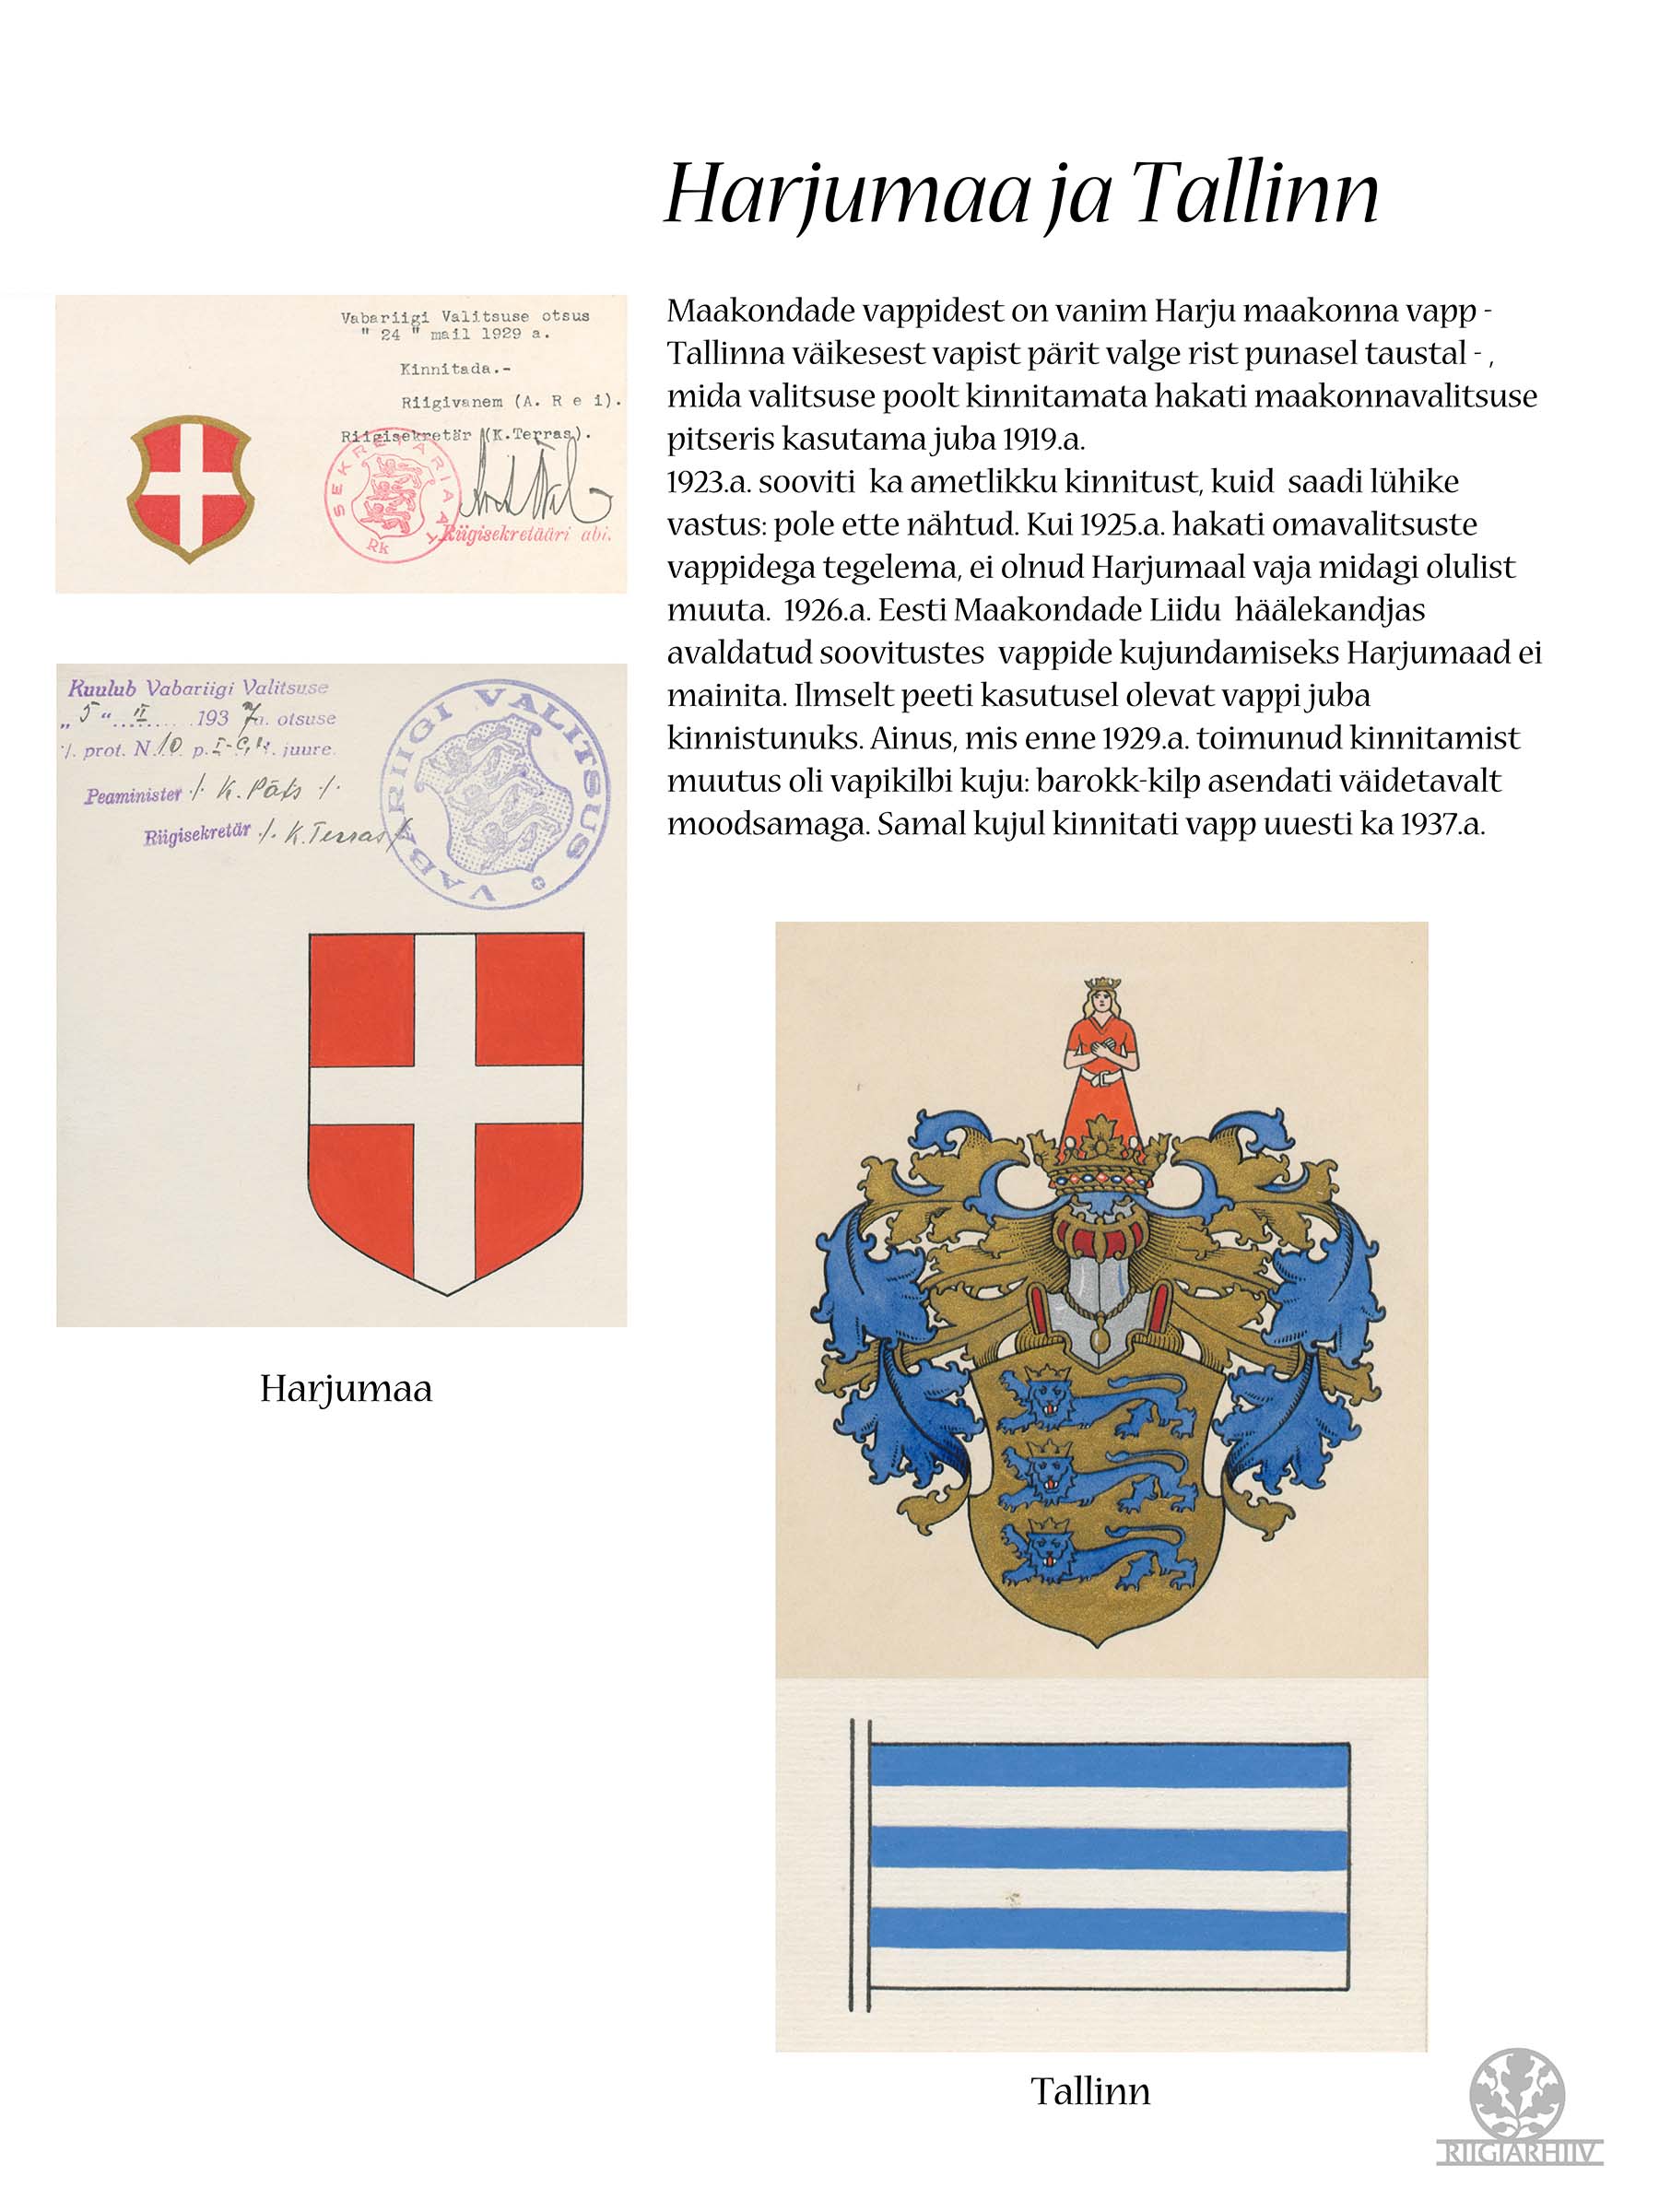 Harjumaa ja Tallinna vapid ja lipud